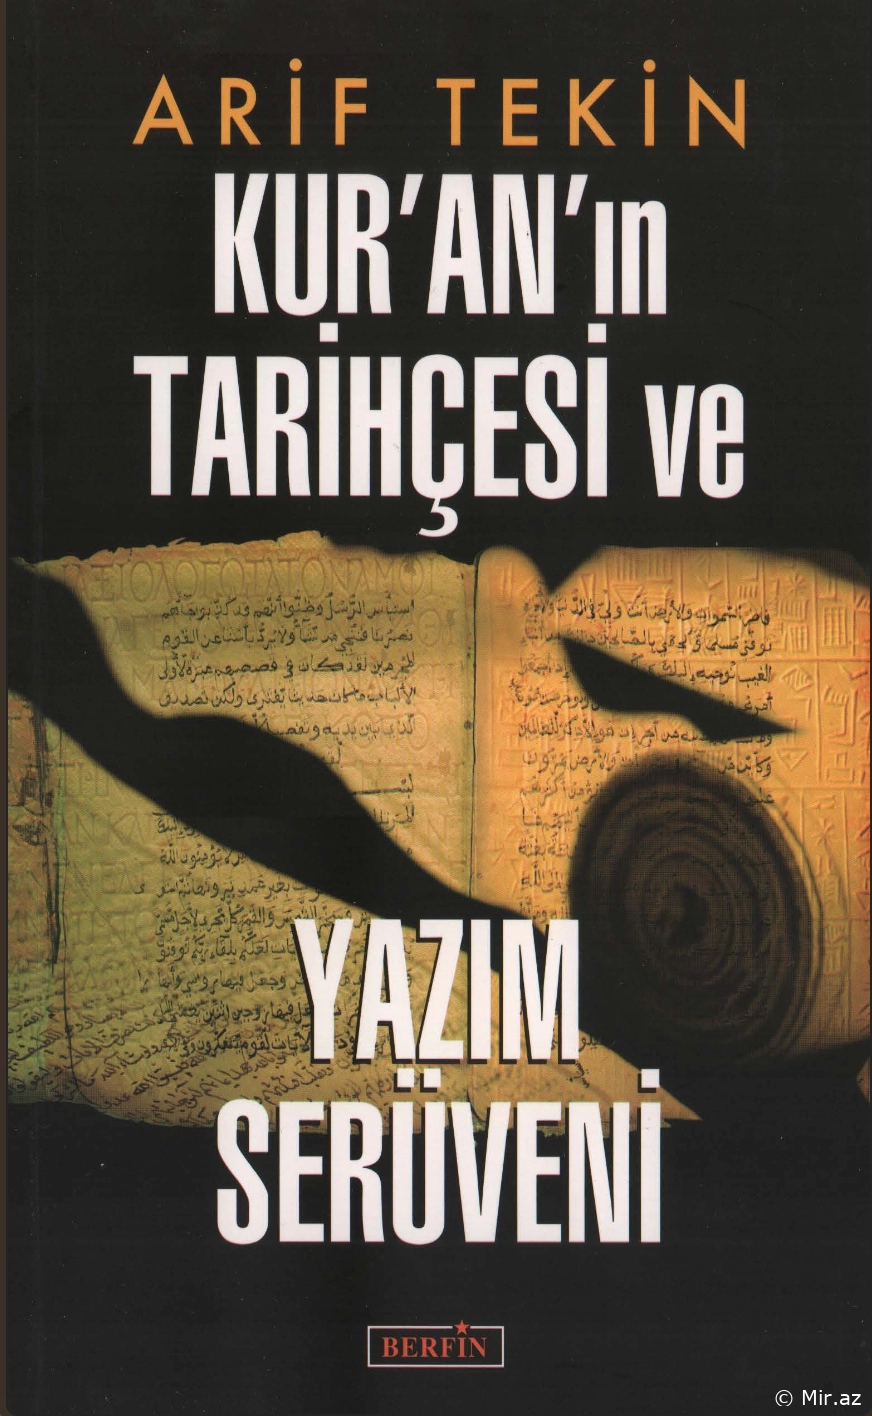 Arif Tekin "Kur'an'ın Tarihçesi ve Yazım Serüveni" PDF